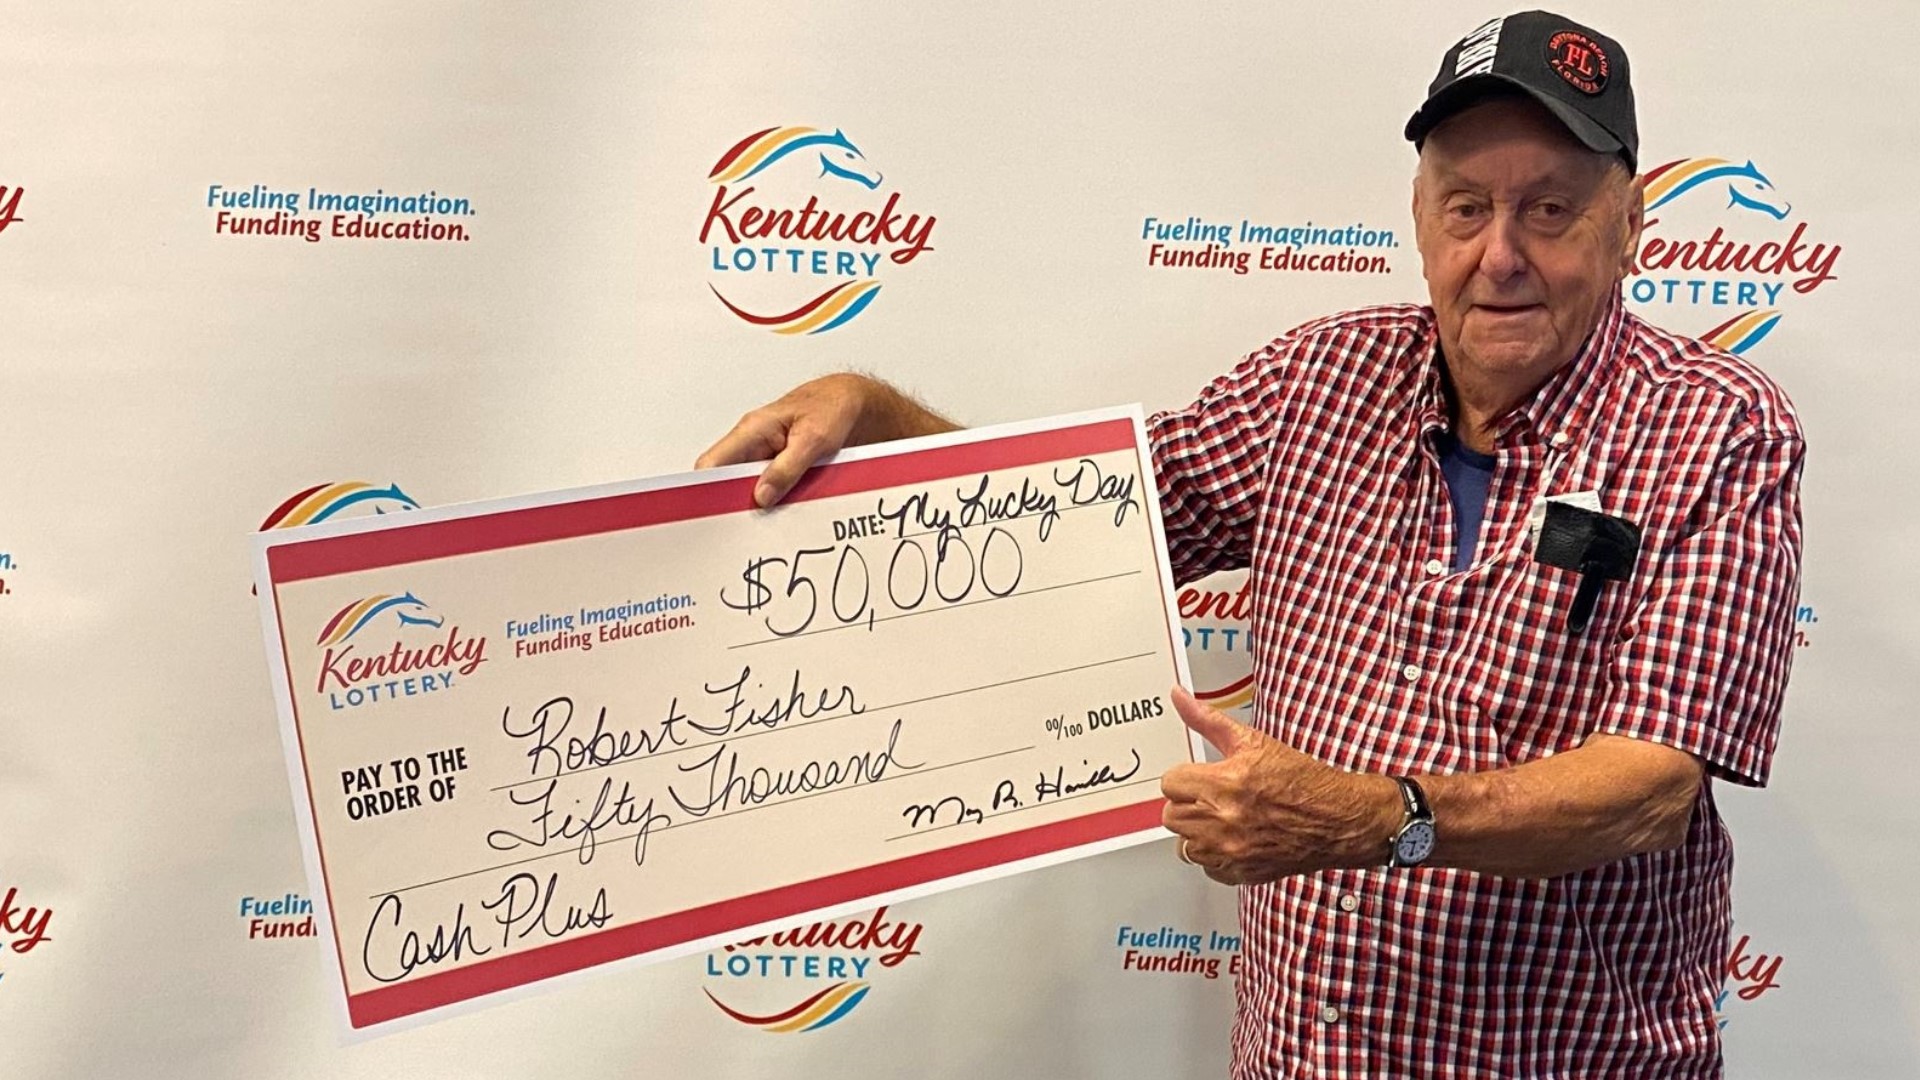 Campbellsville man won $50,000 Kentucky Lottery Scratch-off Prize ...